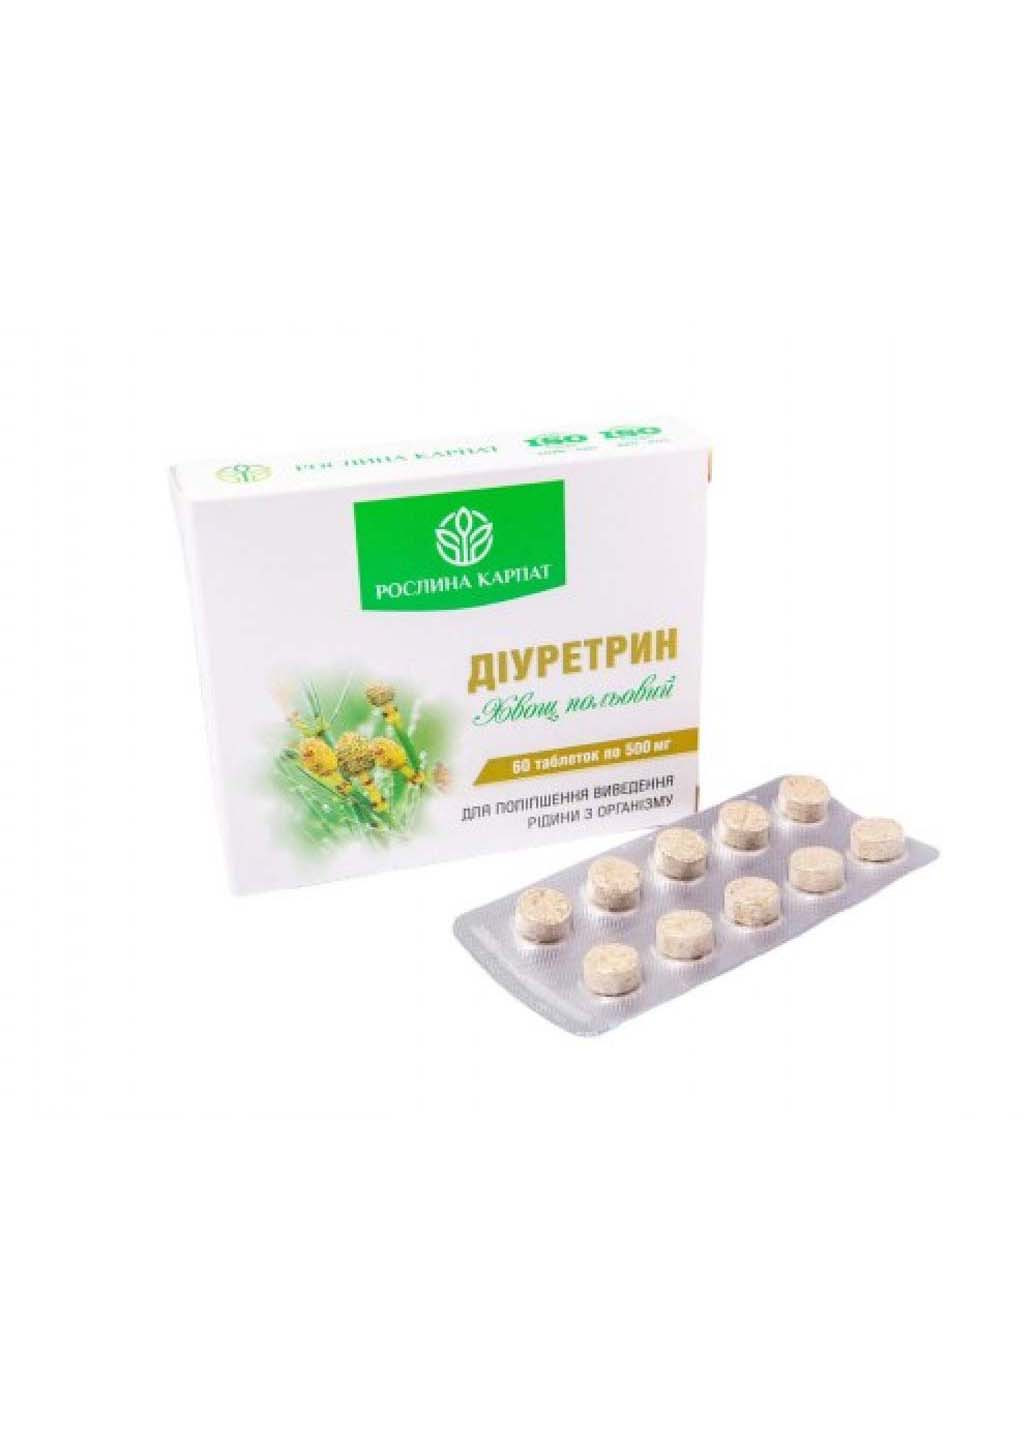 Диуретрин 60 таблеток по 500 мг Рослина Карпат (253845357)